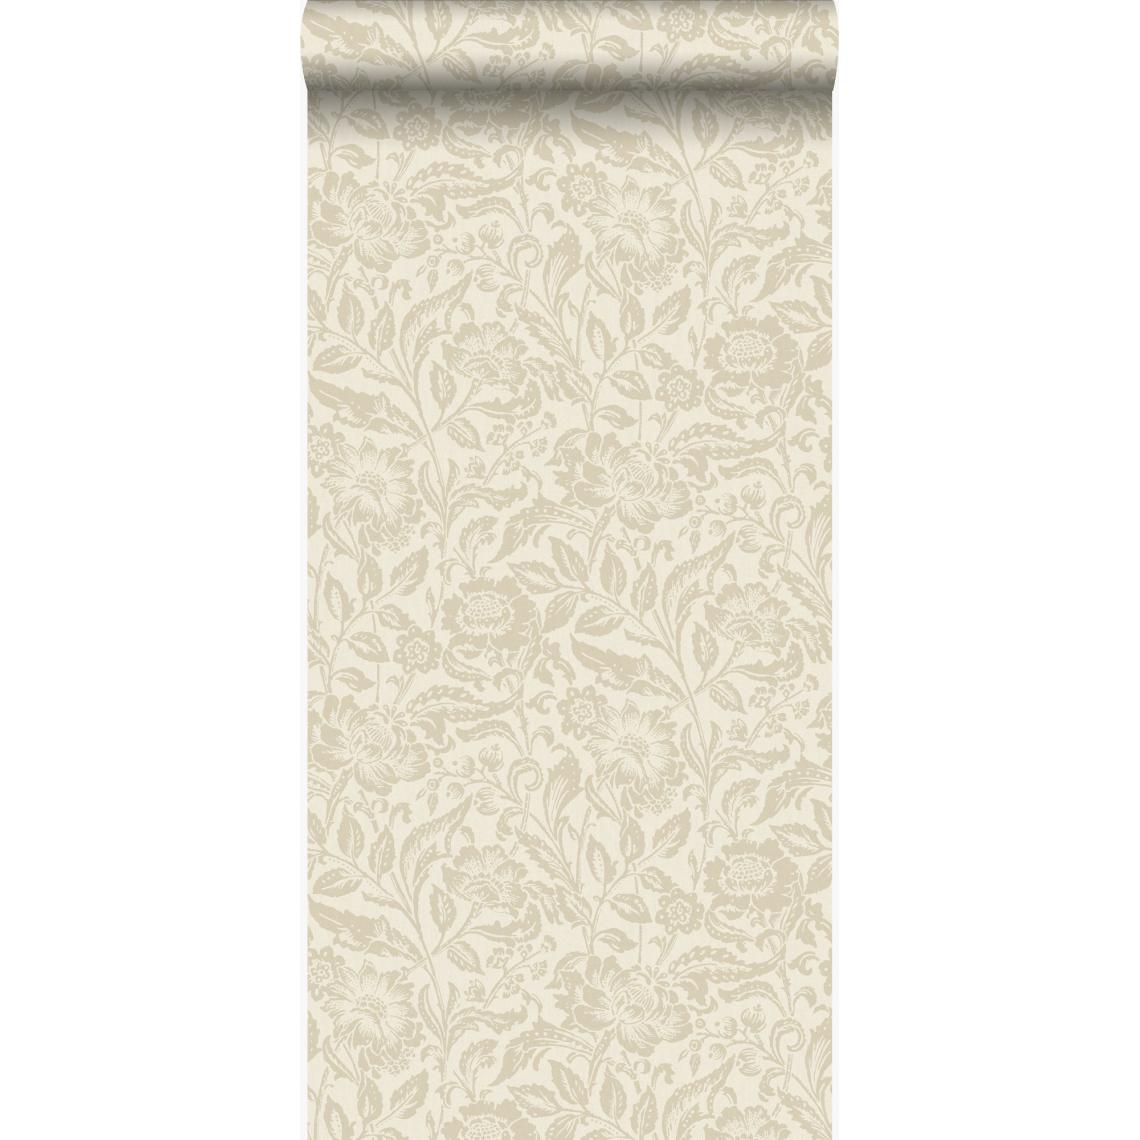 Origin - Origin papier peint fleurs beige crème - 347026 - 53 cm x 10,05 m - Papier peint